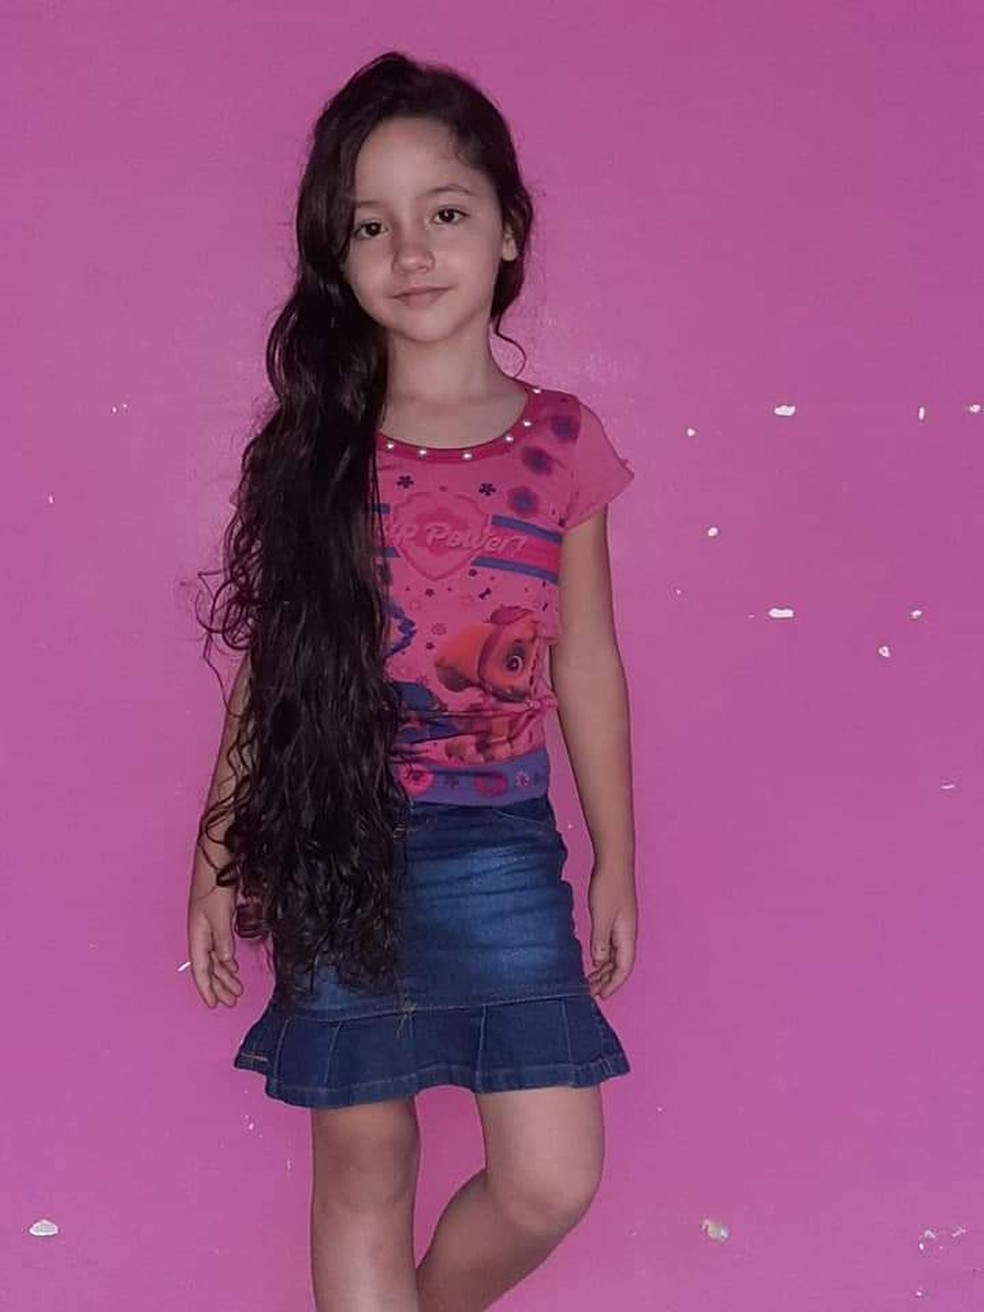 Meninas - Melissa - 5 anos - Belo Horizonte - MG